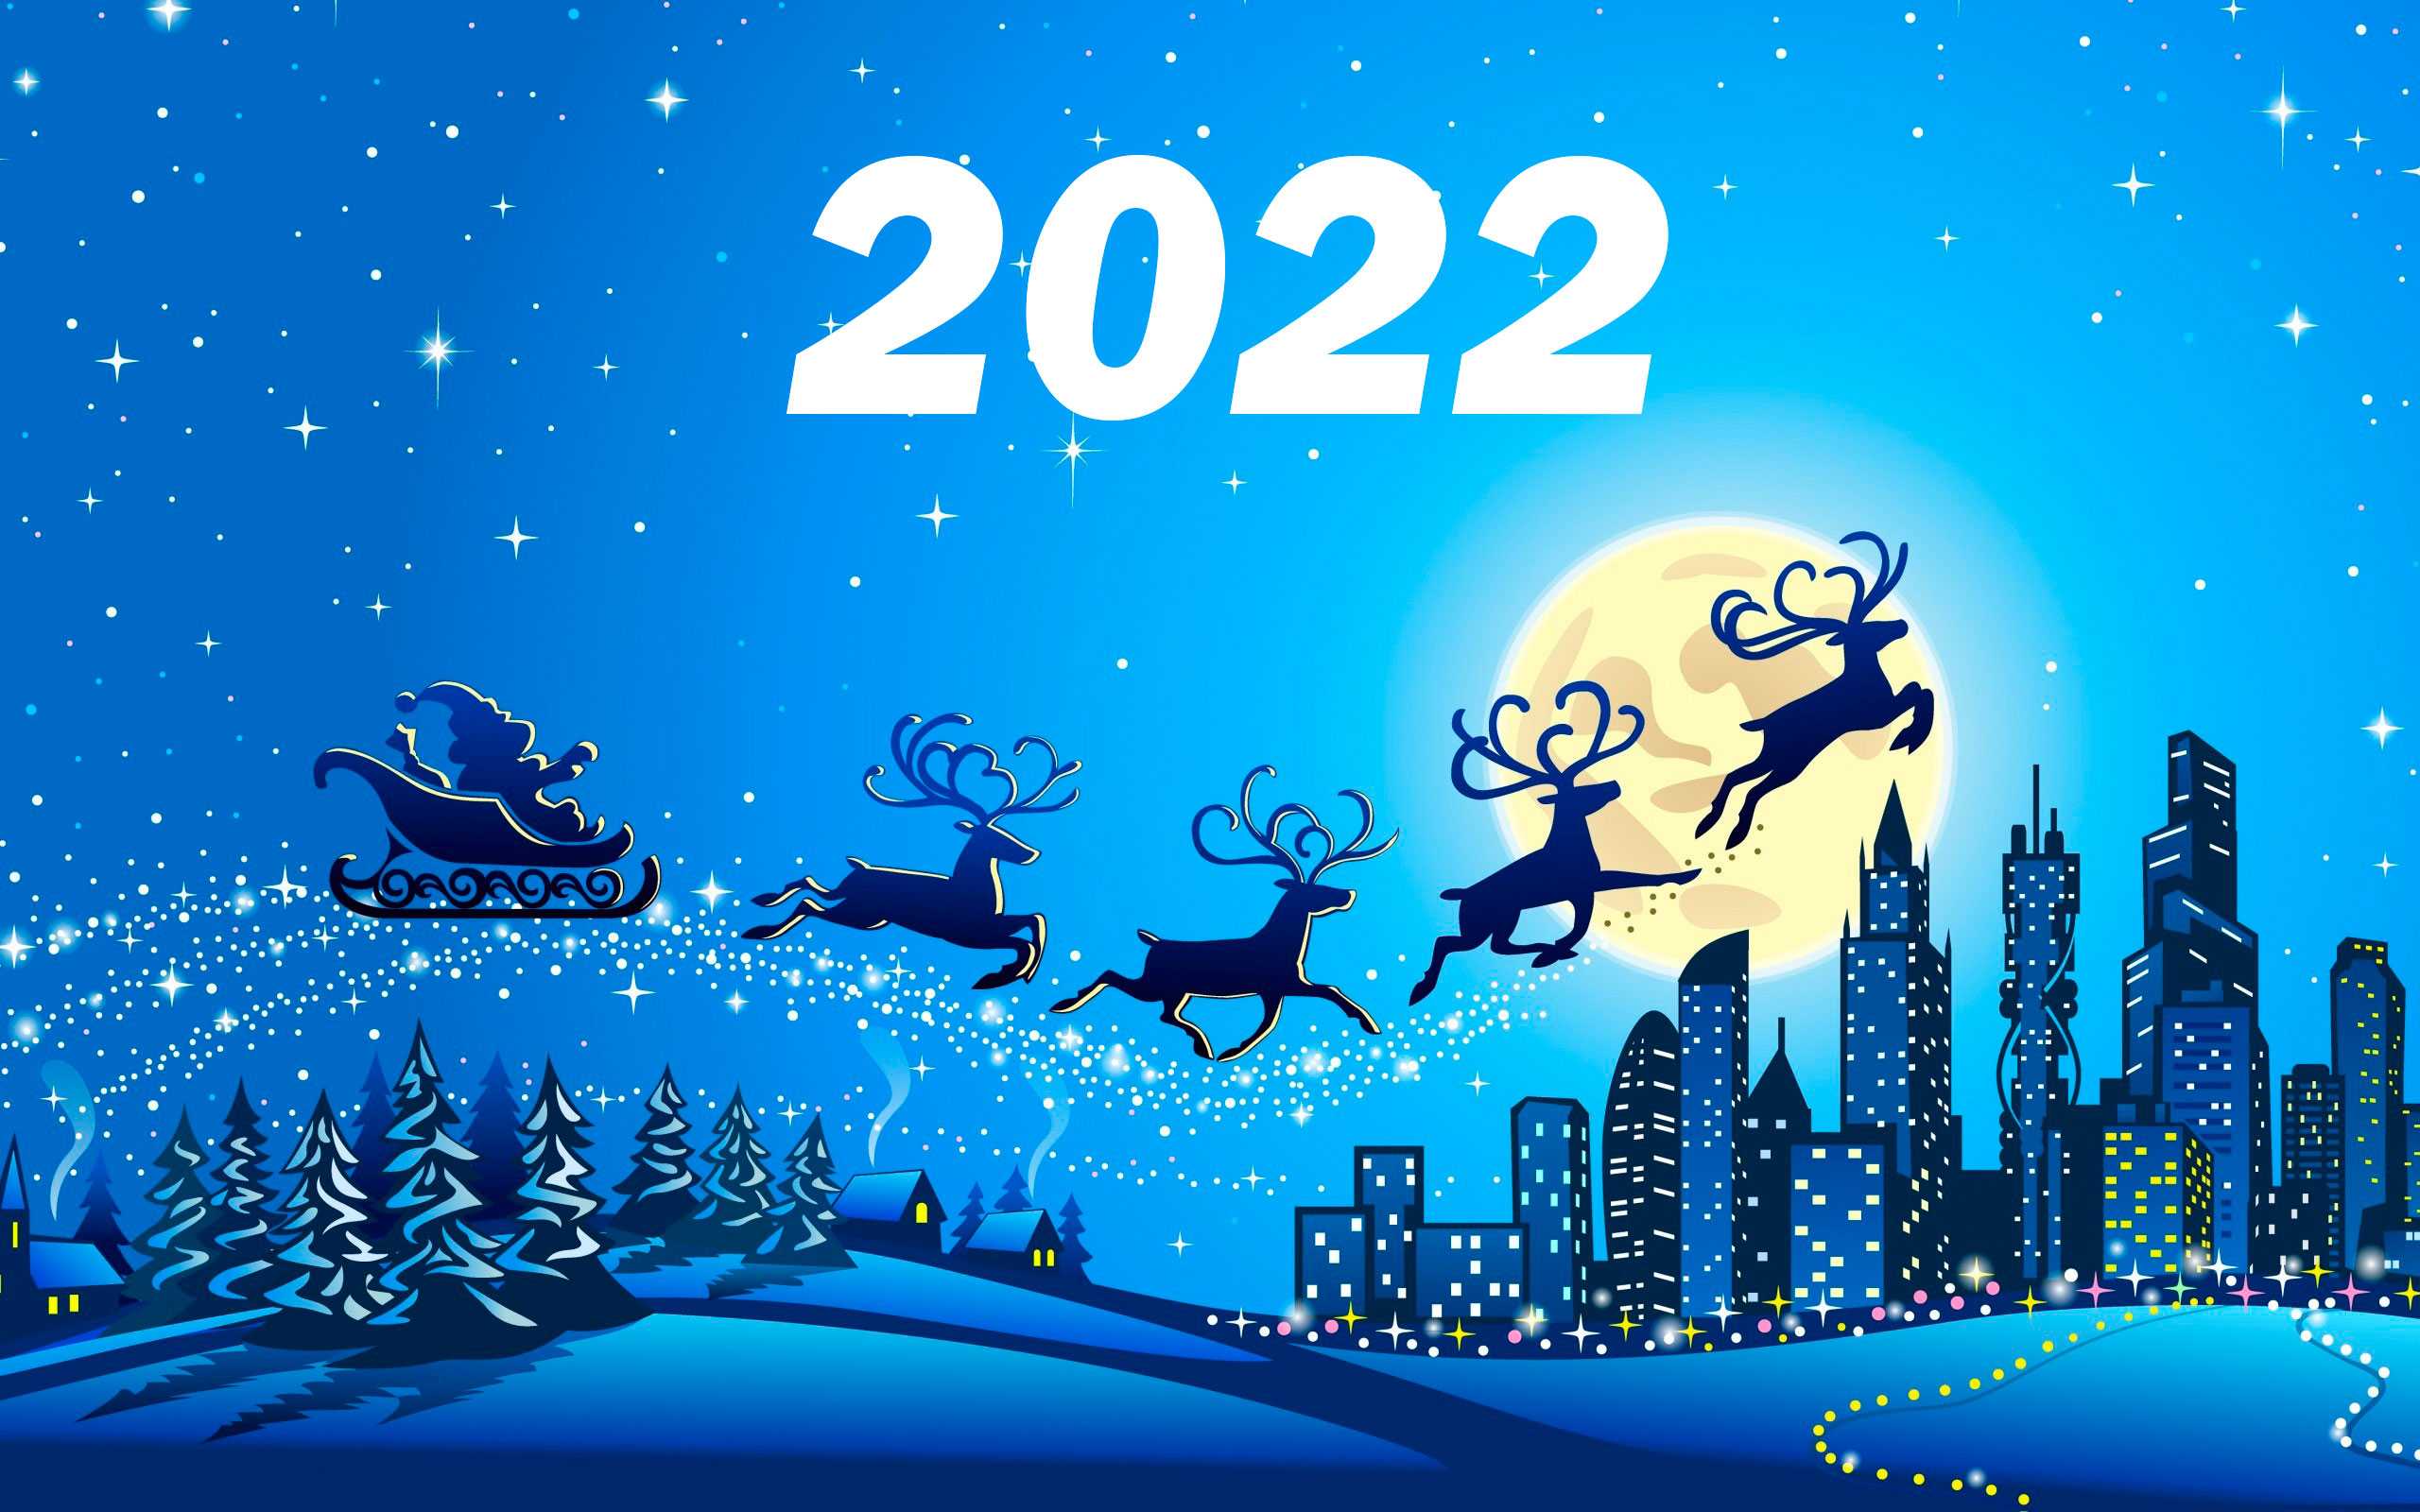 Сценки на новый год 2022: смешные и современные